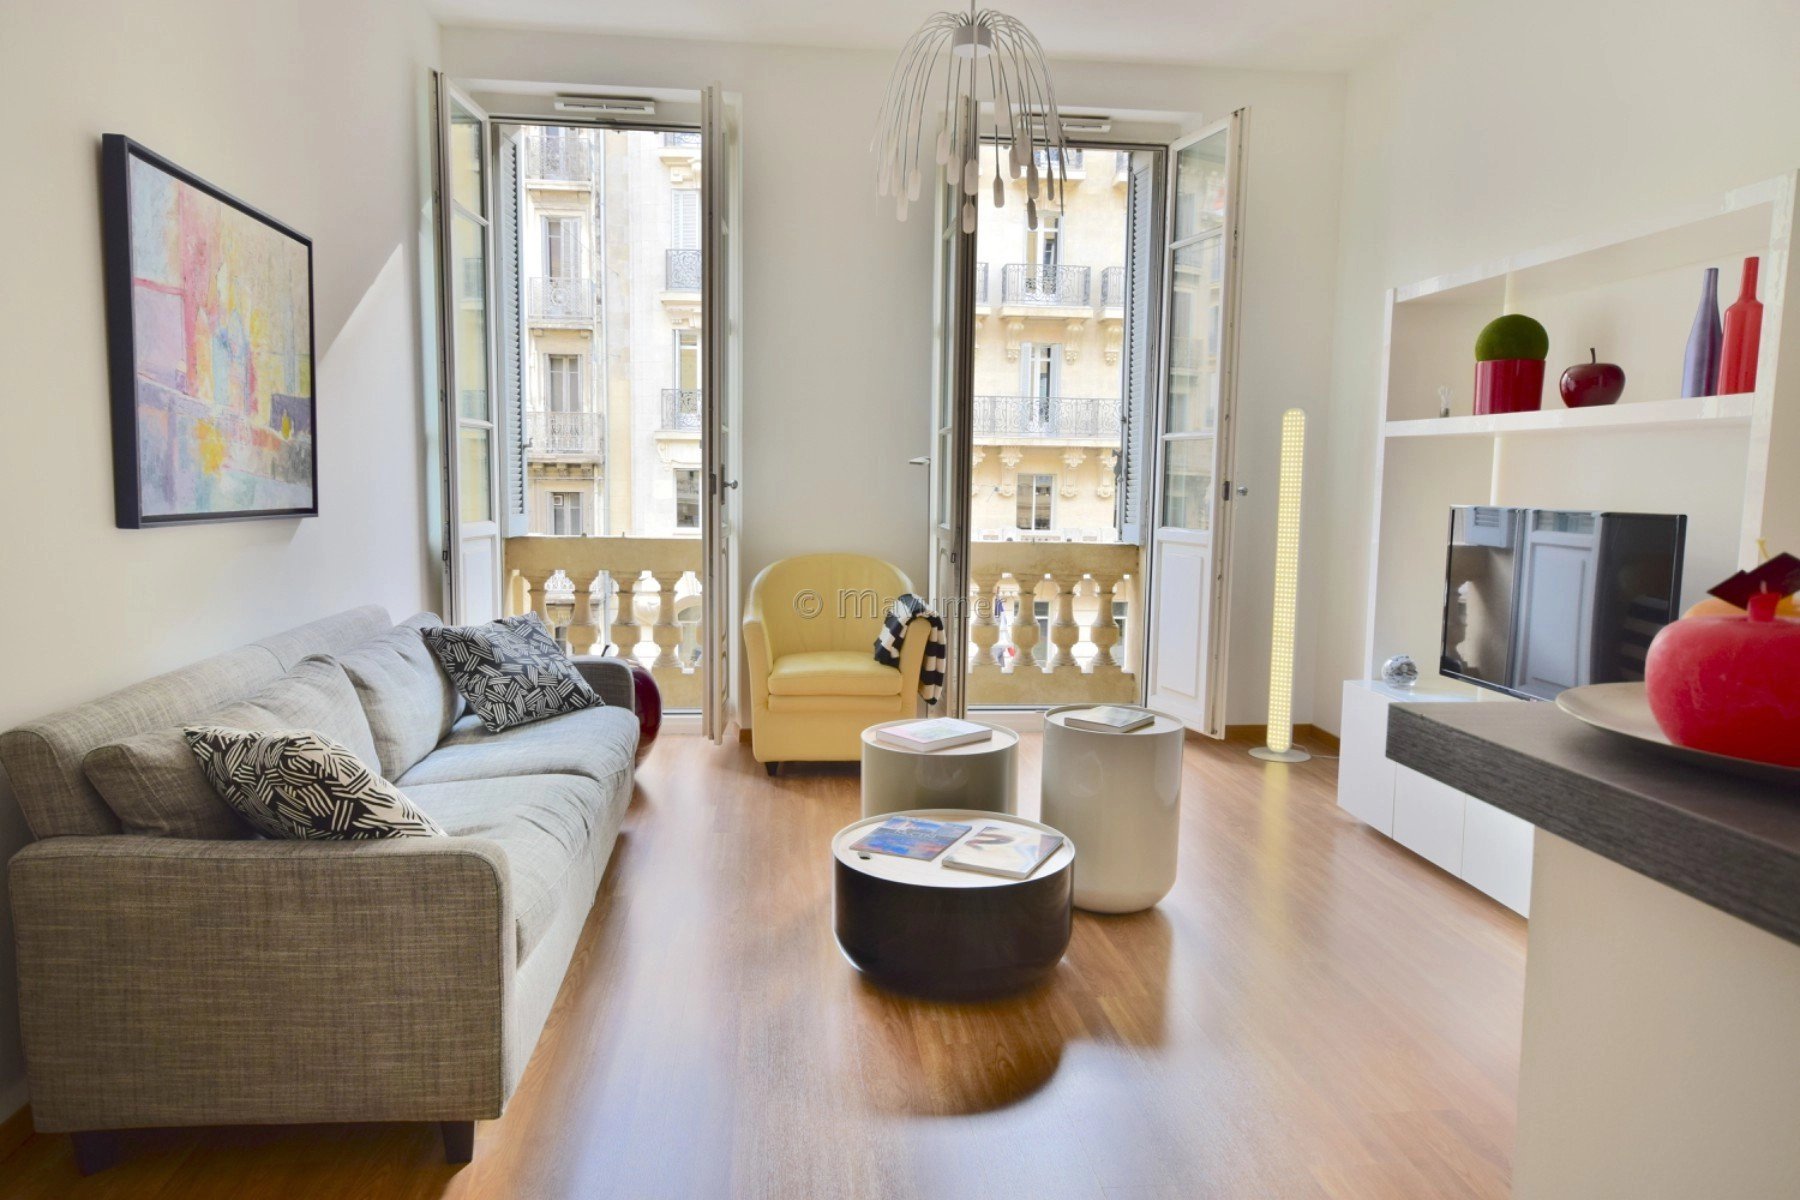 Sale Apartment - Marseille 2ème Les Grands Carmes